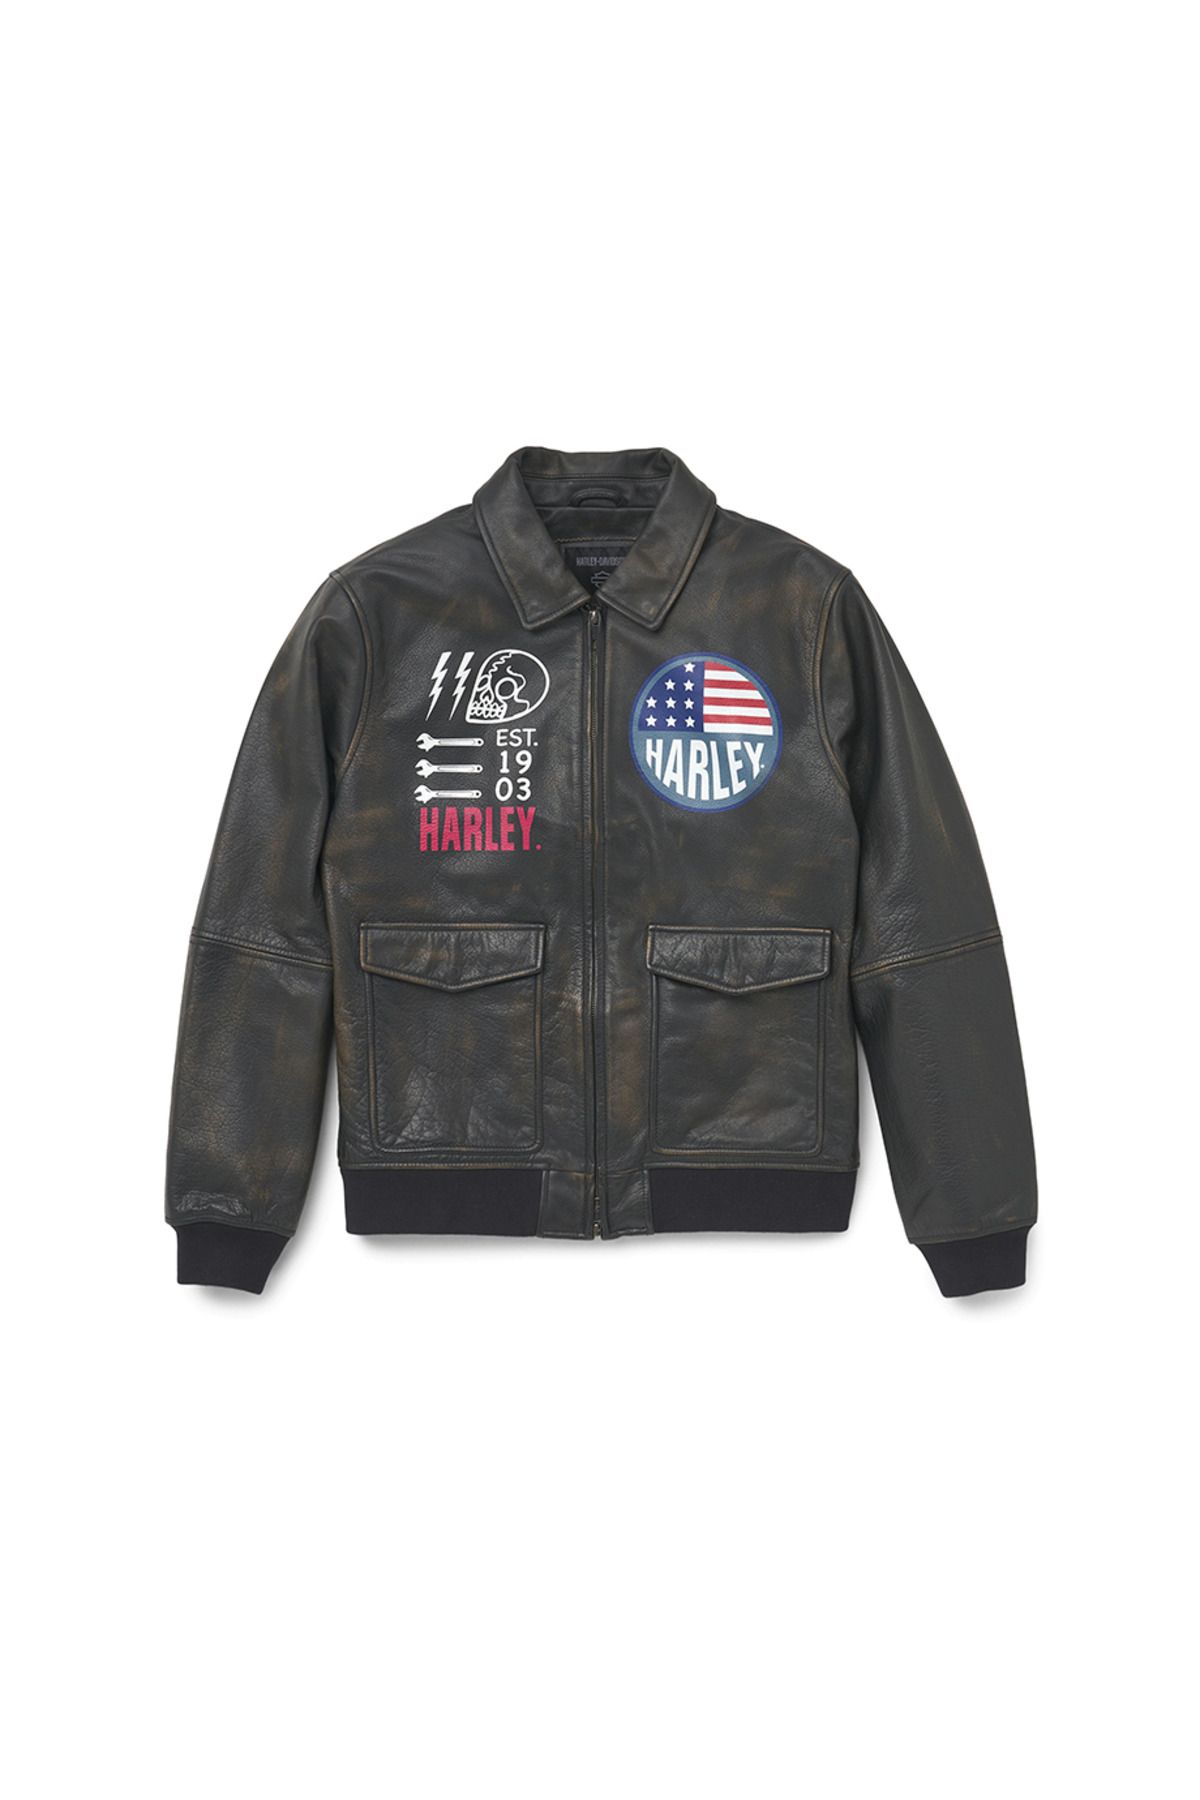 Harley Davidson Harley-davidson Men's Archer Bomber Leather Jacket